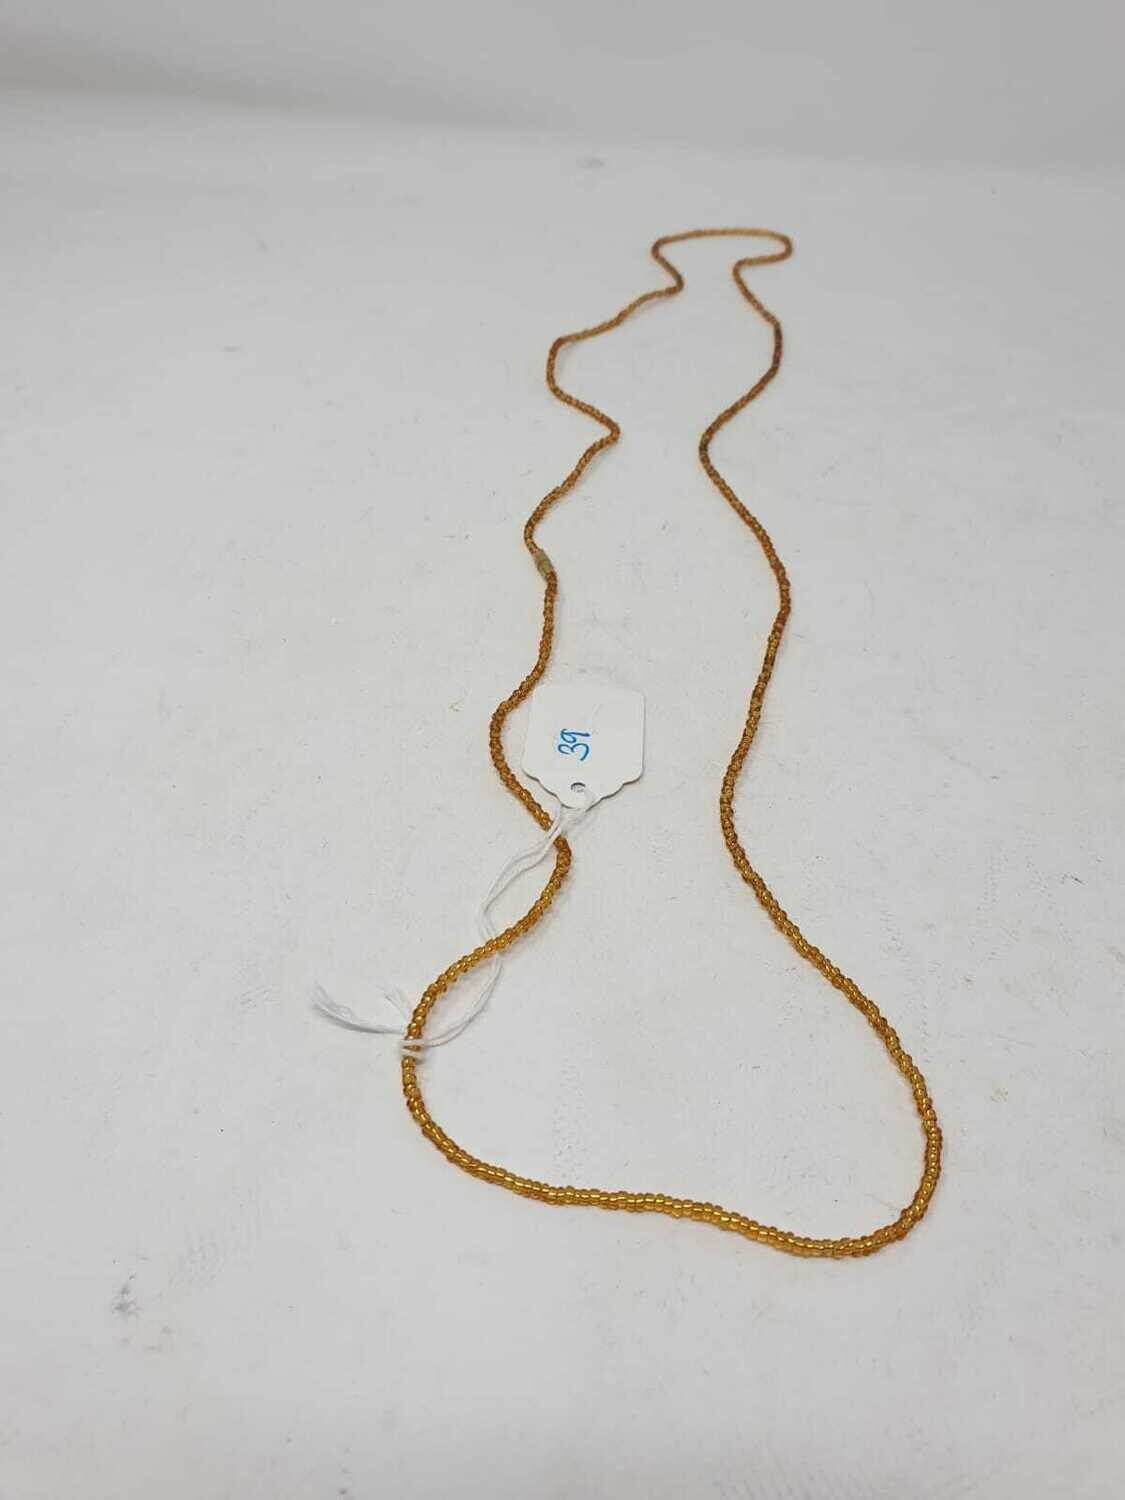 Handbeaded African Waist Beads - Size 39"/ 99.1cm